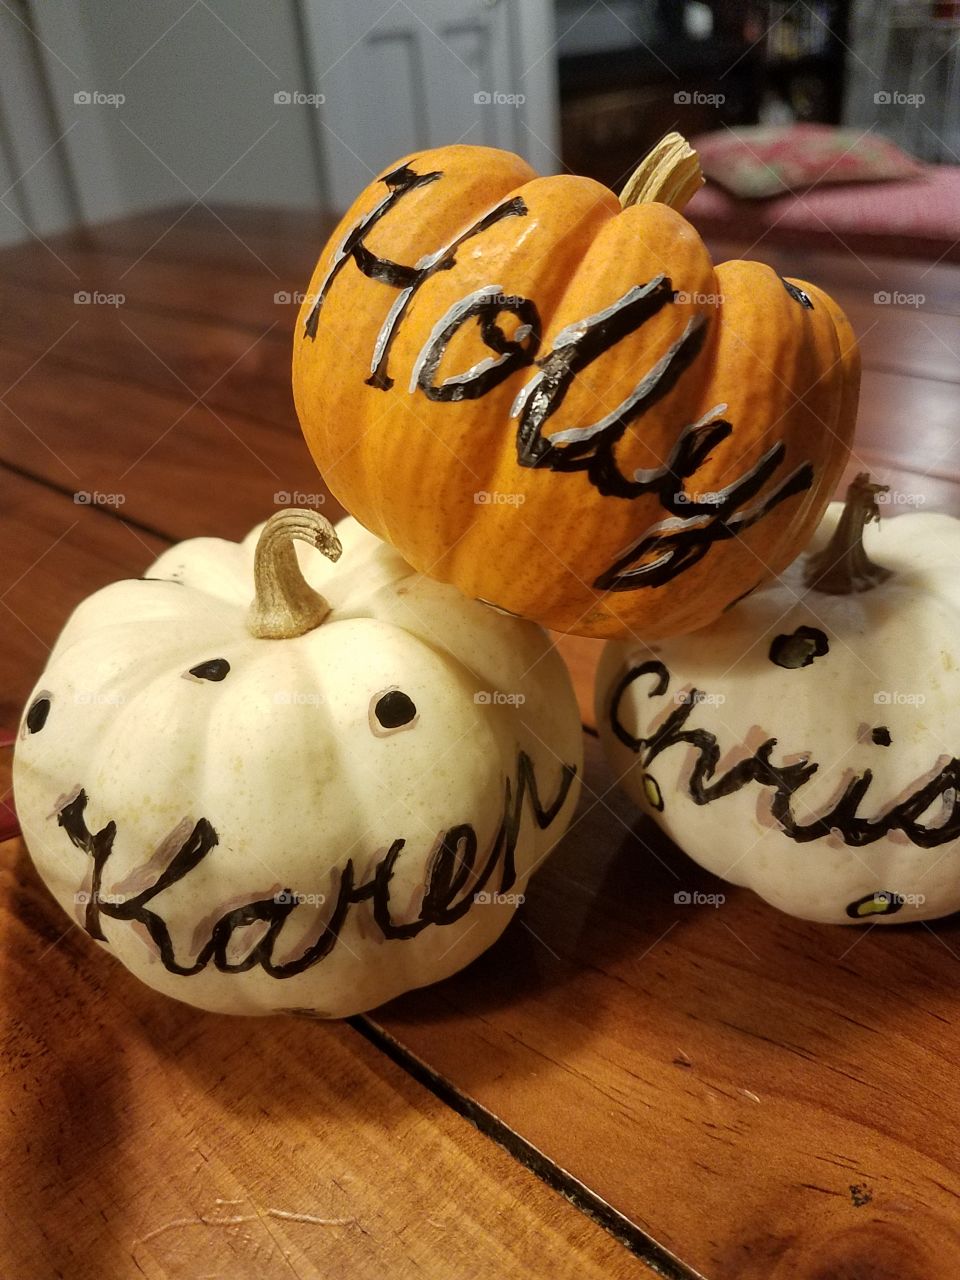 painted pumpkins